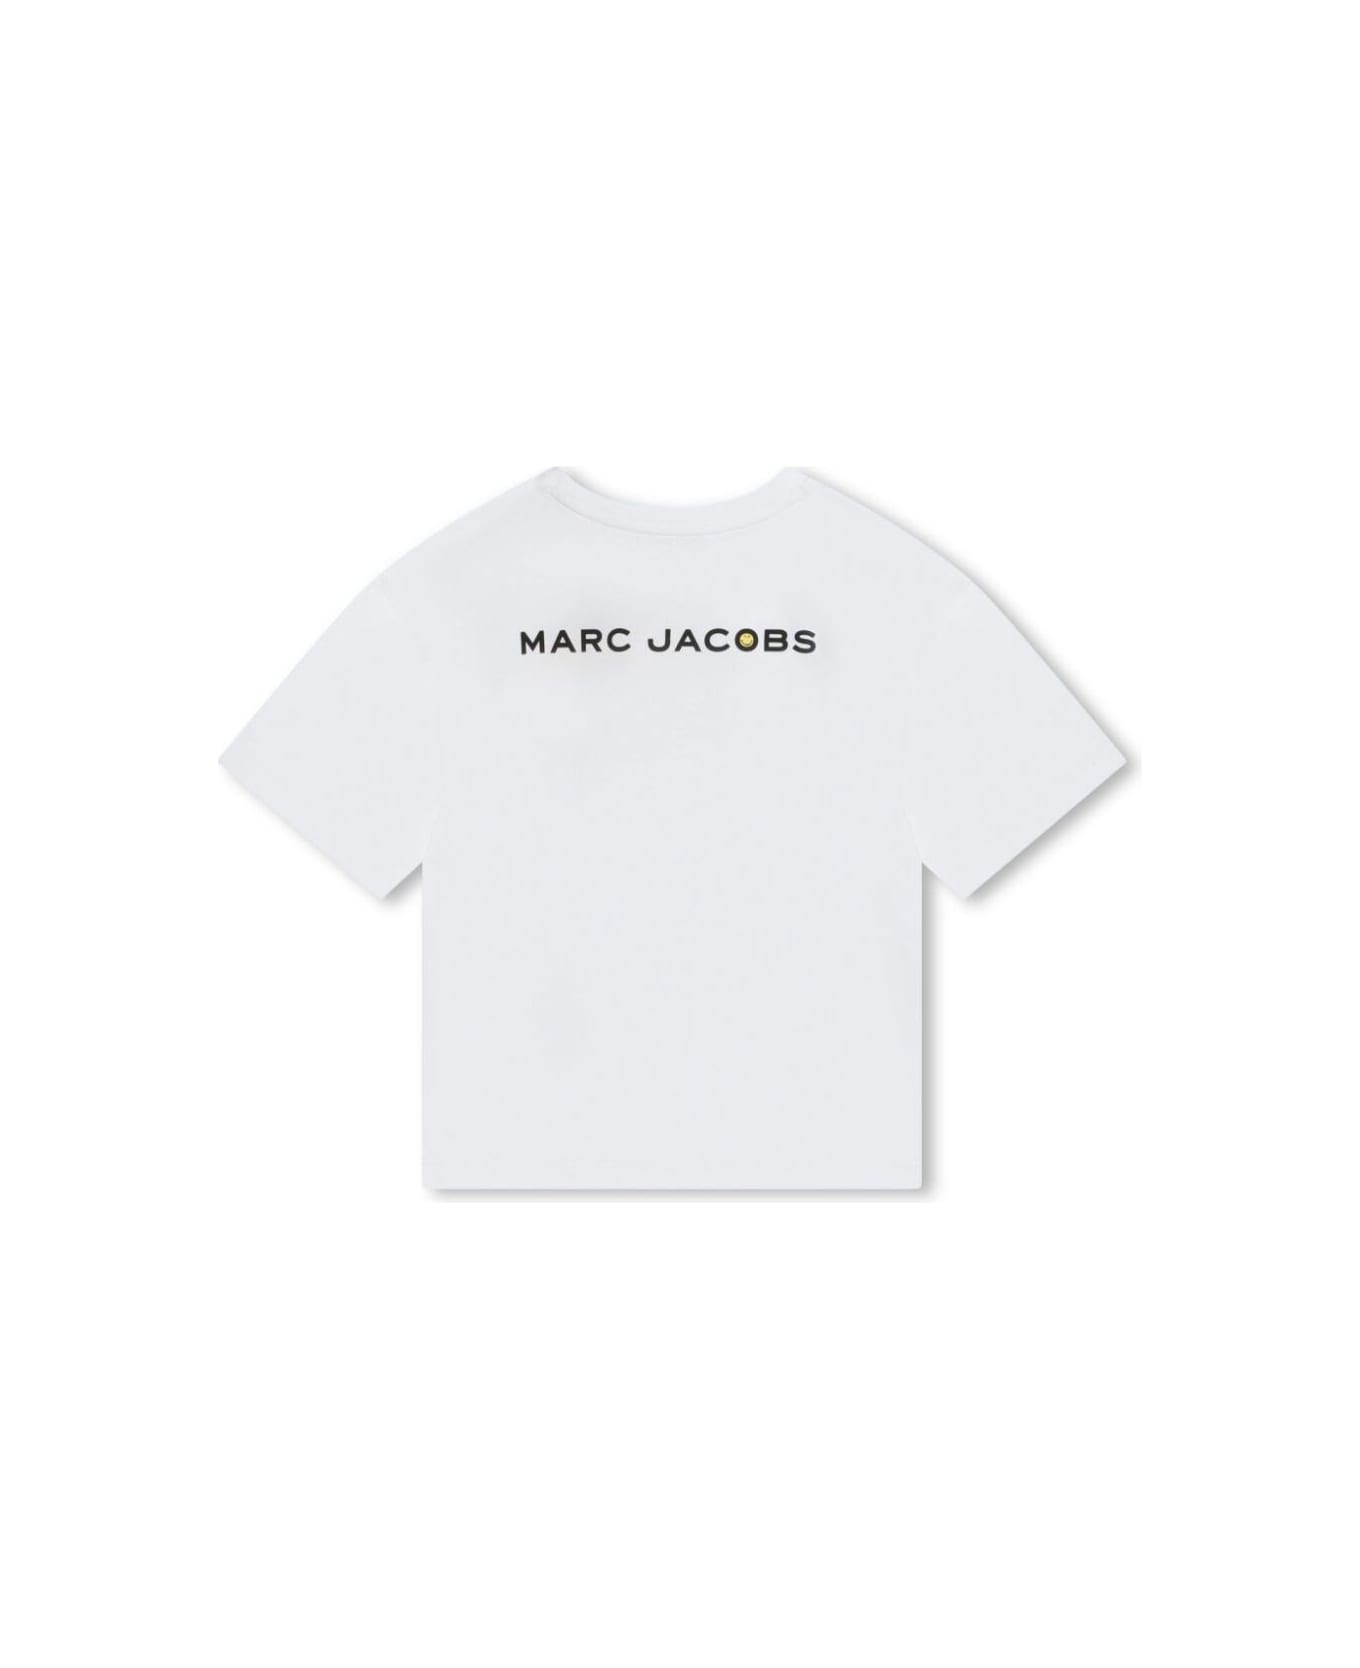 Marc Jacobs W6004010p - Bianco